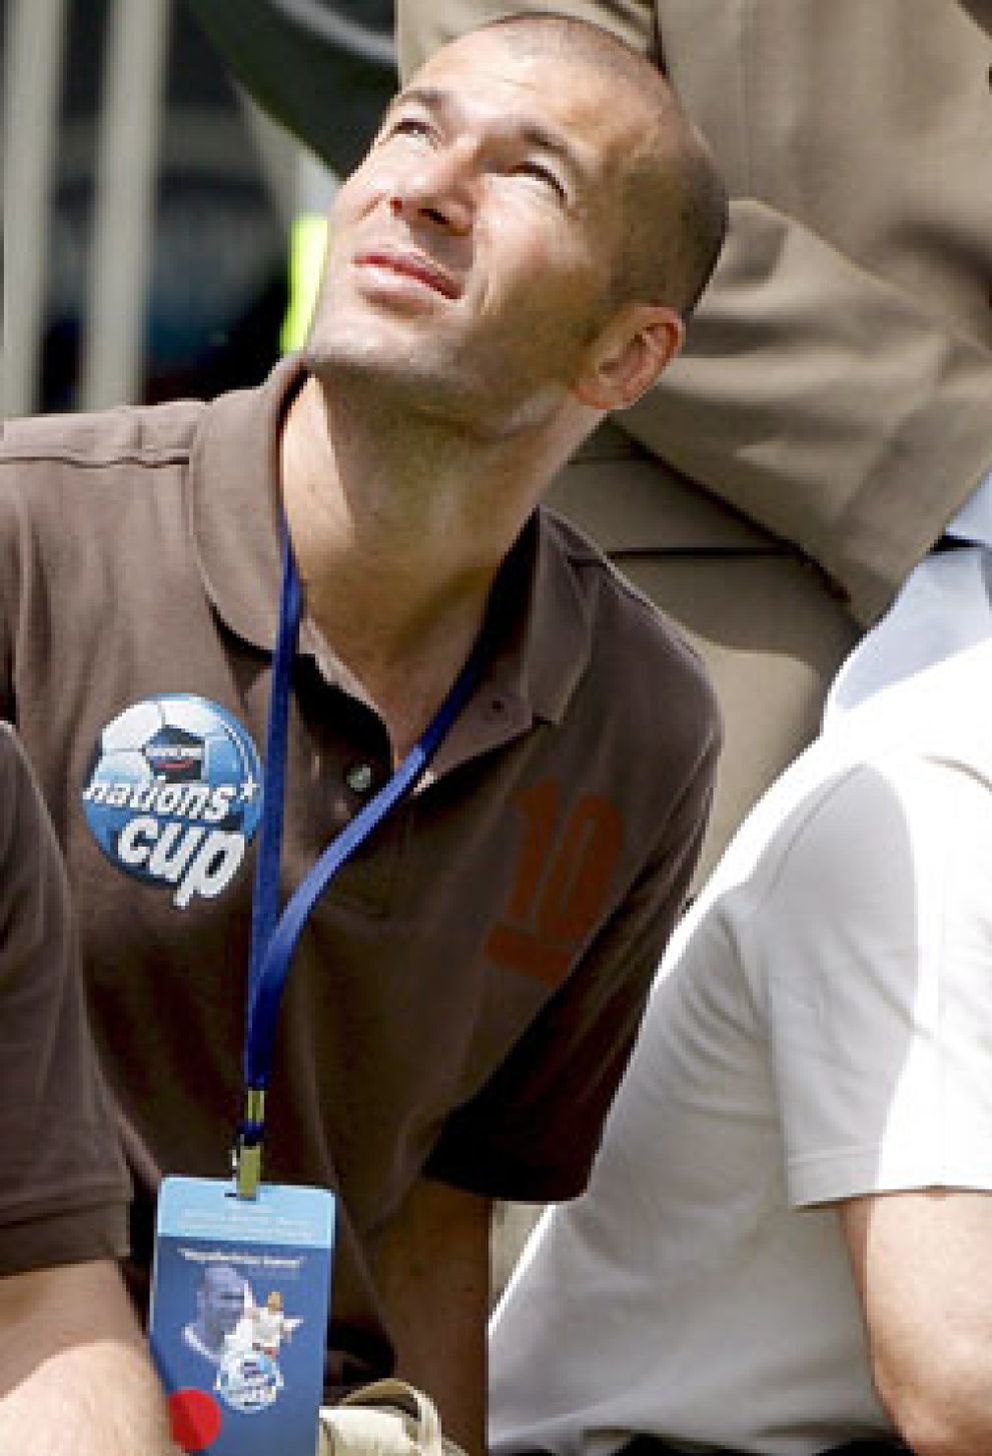 Foto: Dopaje, ingresos, arrepentimiento... se descubre la polémica biografía de Zidane